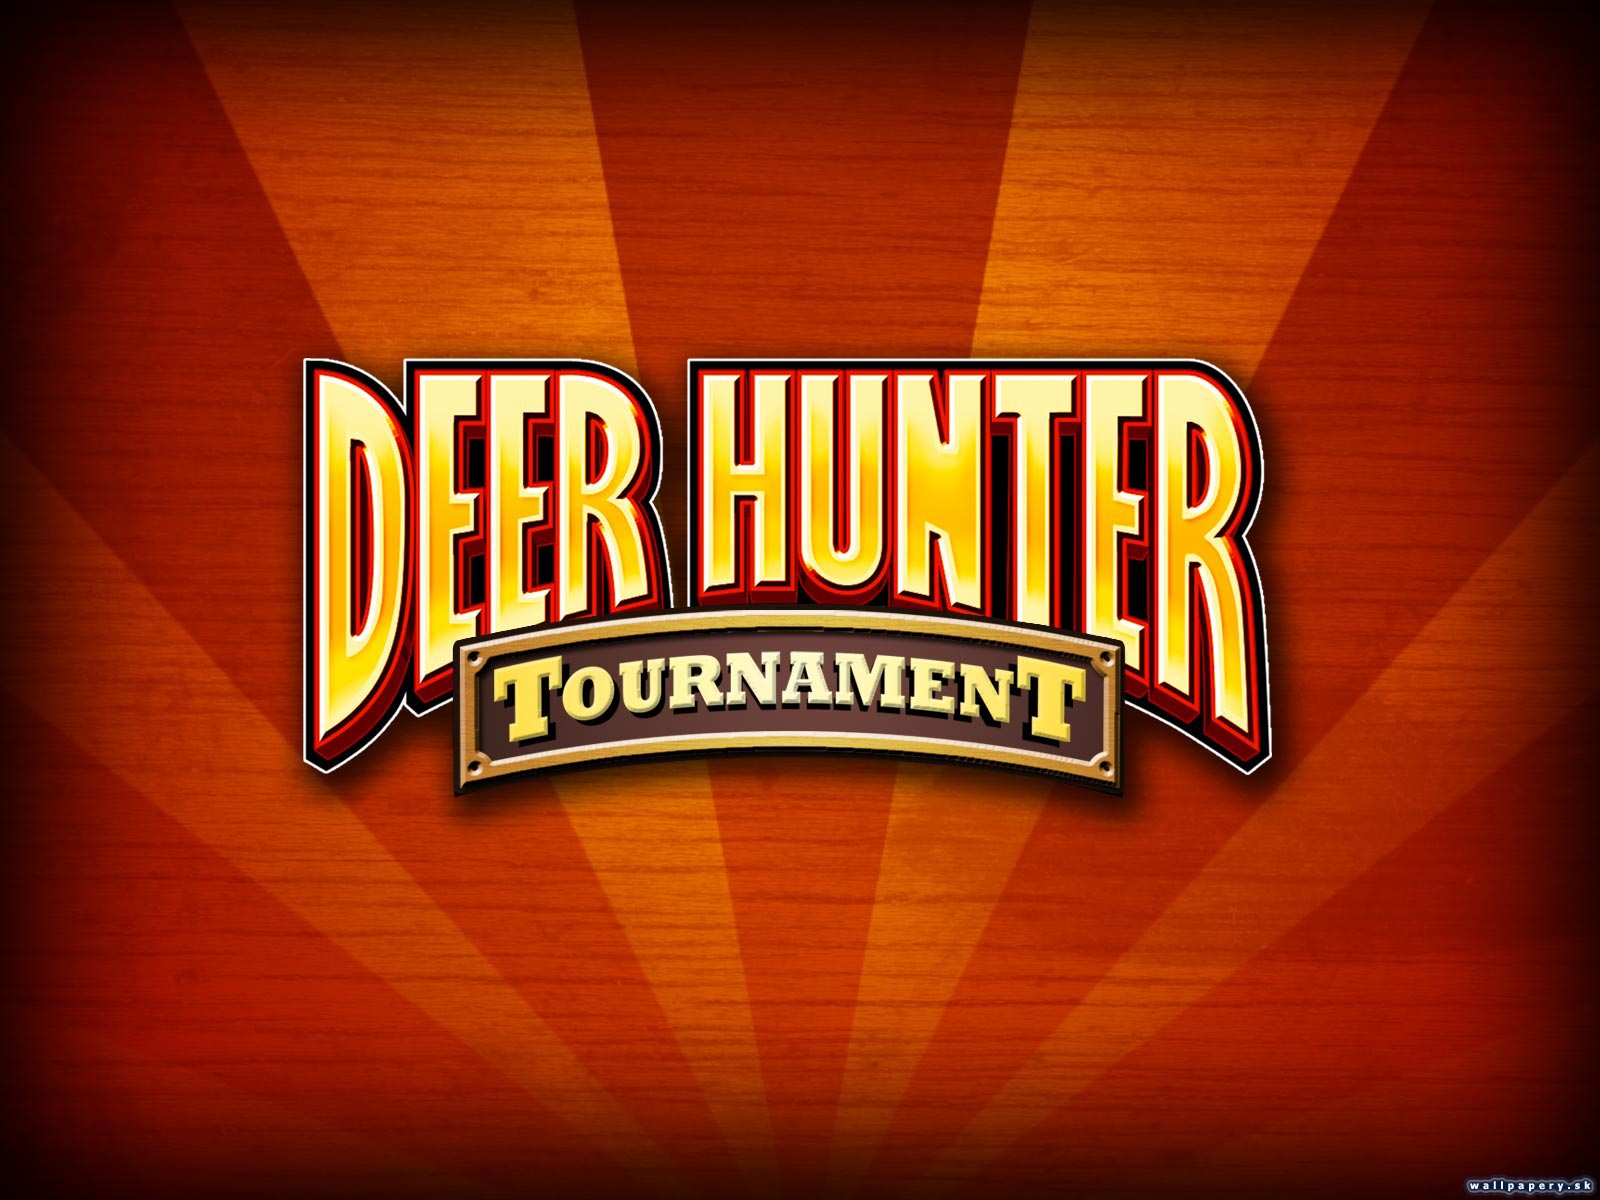 Deer Hunter Tournament - wallpaper 1